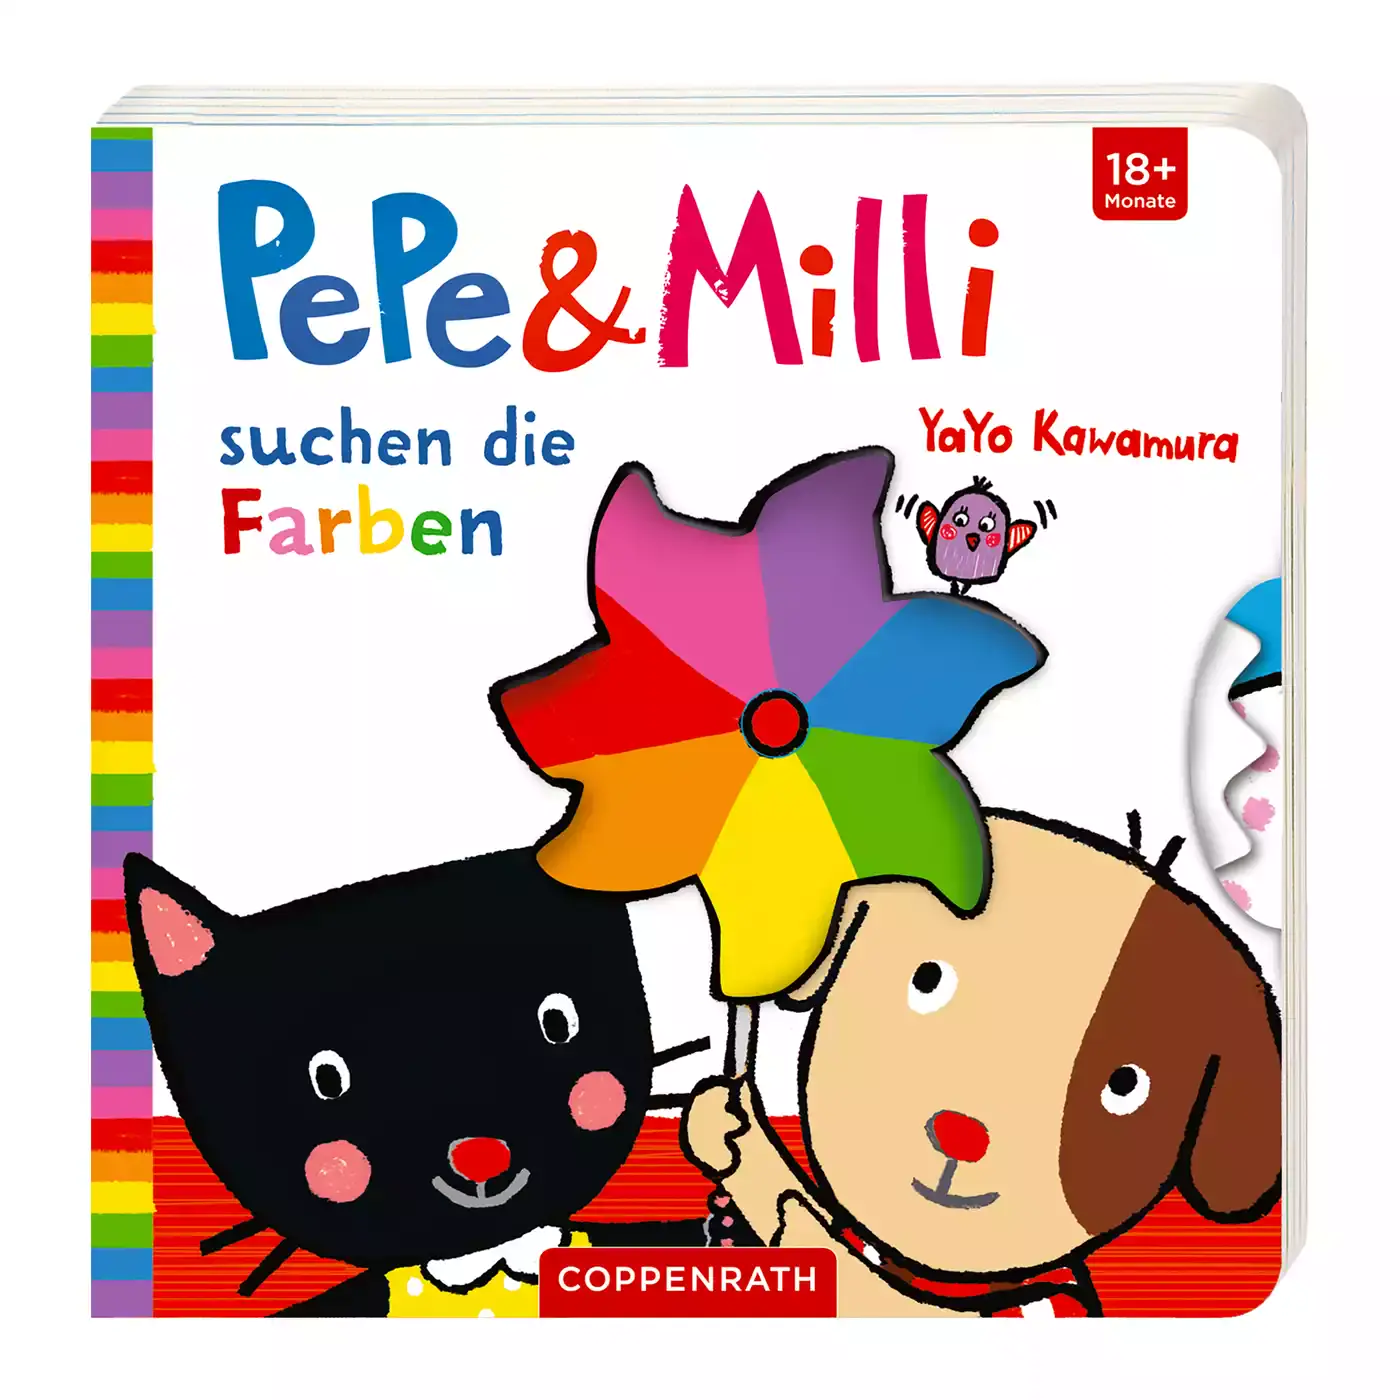 Pepe & Milli suchen die Farben COPPENRATH 2000576309505 1